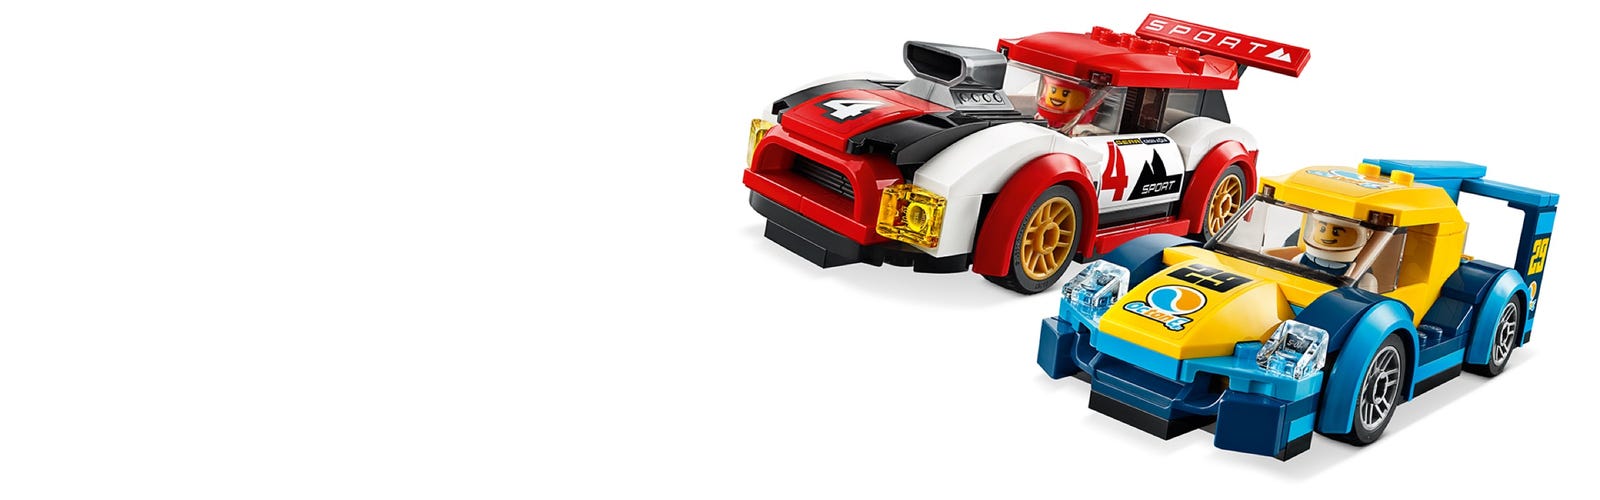 Lego City 60256 Voiture de course